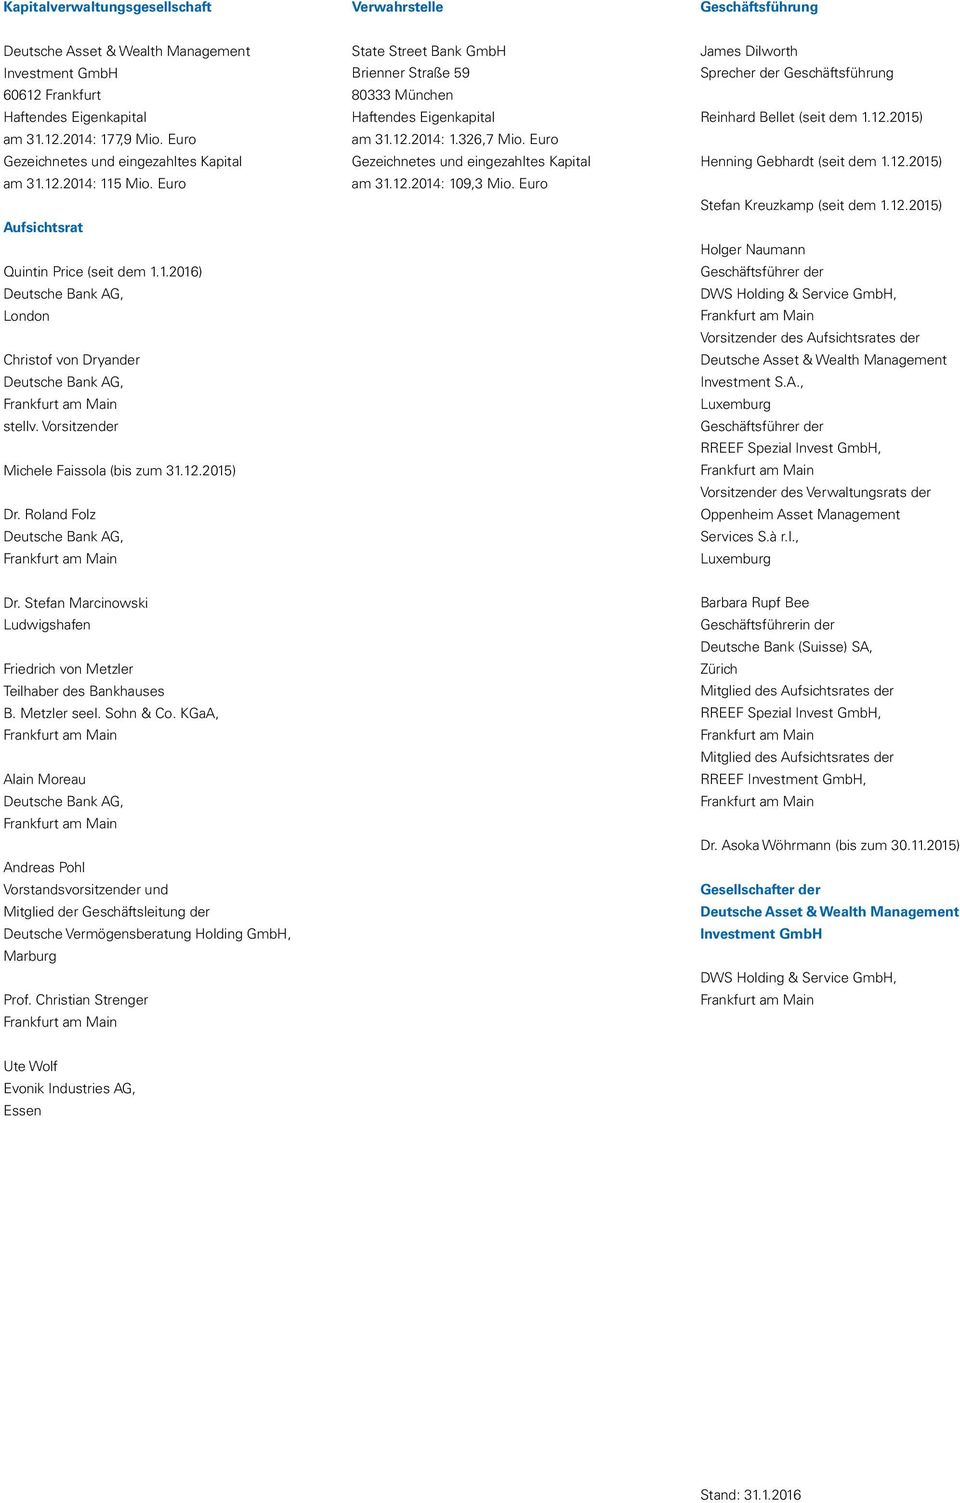 Vorsitzender Michele Faissola (bis zum 31.12.2015) Dr. Roland Folz Deutsche Bank AG, State Street Bank GmbH Brienner Straße 59 80333 München Haftendes Eigenkapital am 31.12.2014: 1.326,7 Mio.